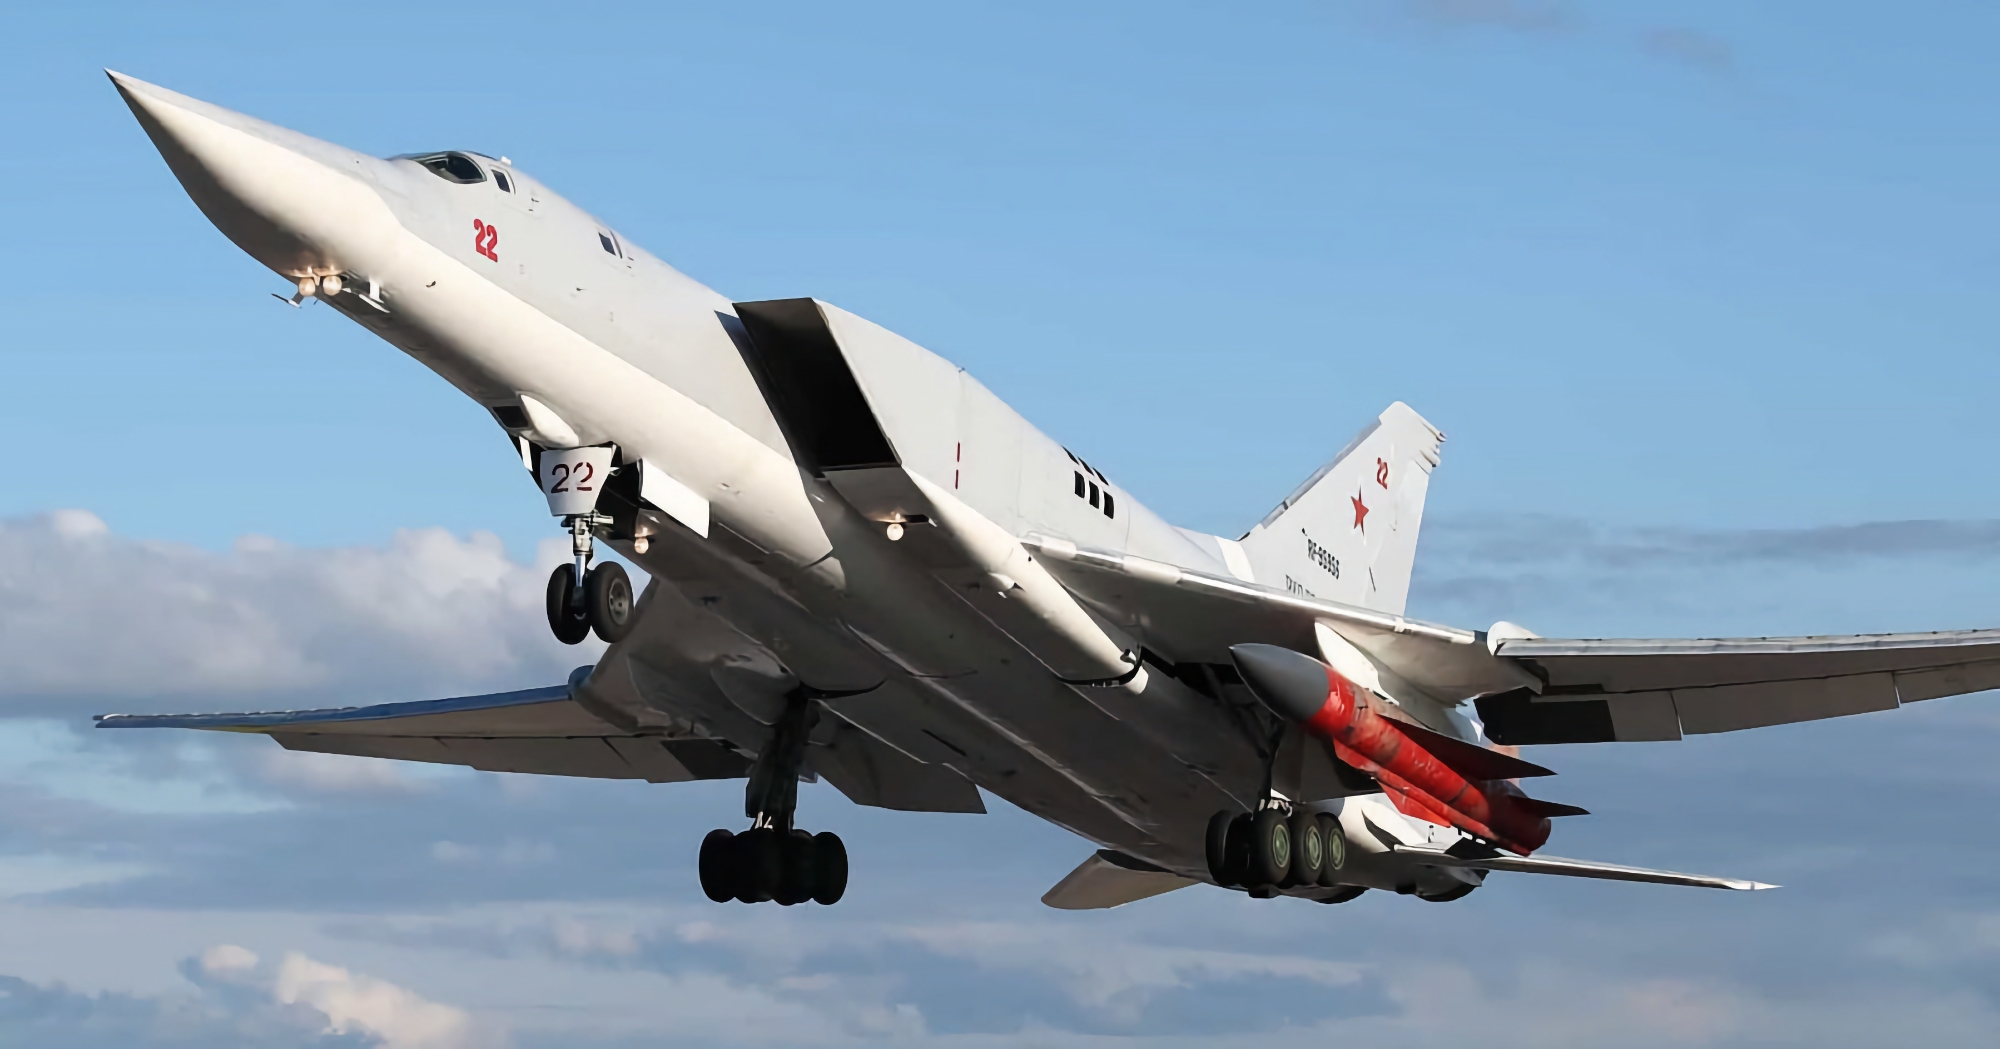 Ukraines luftforsvarssystem har for første gang ødelagt et russisk Tu-22M3 strategisk bombefly med Kh-22 krydsermissiler.